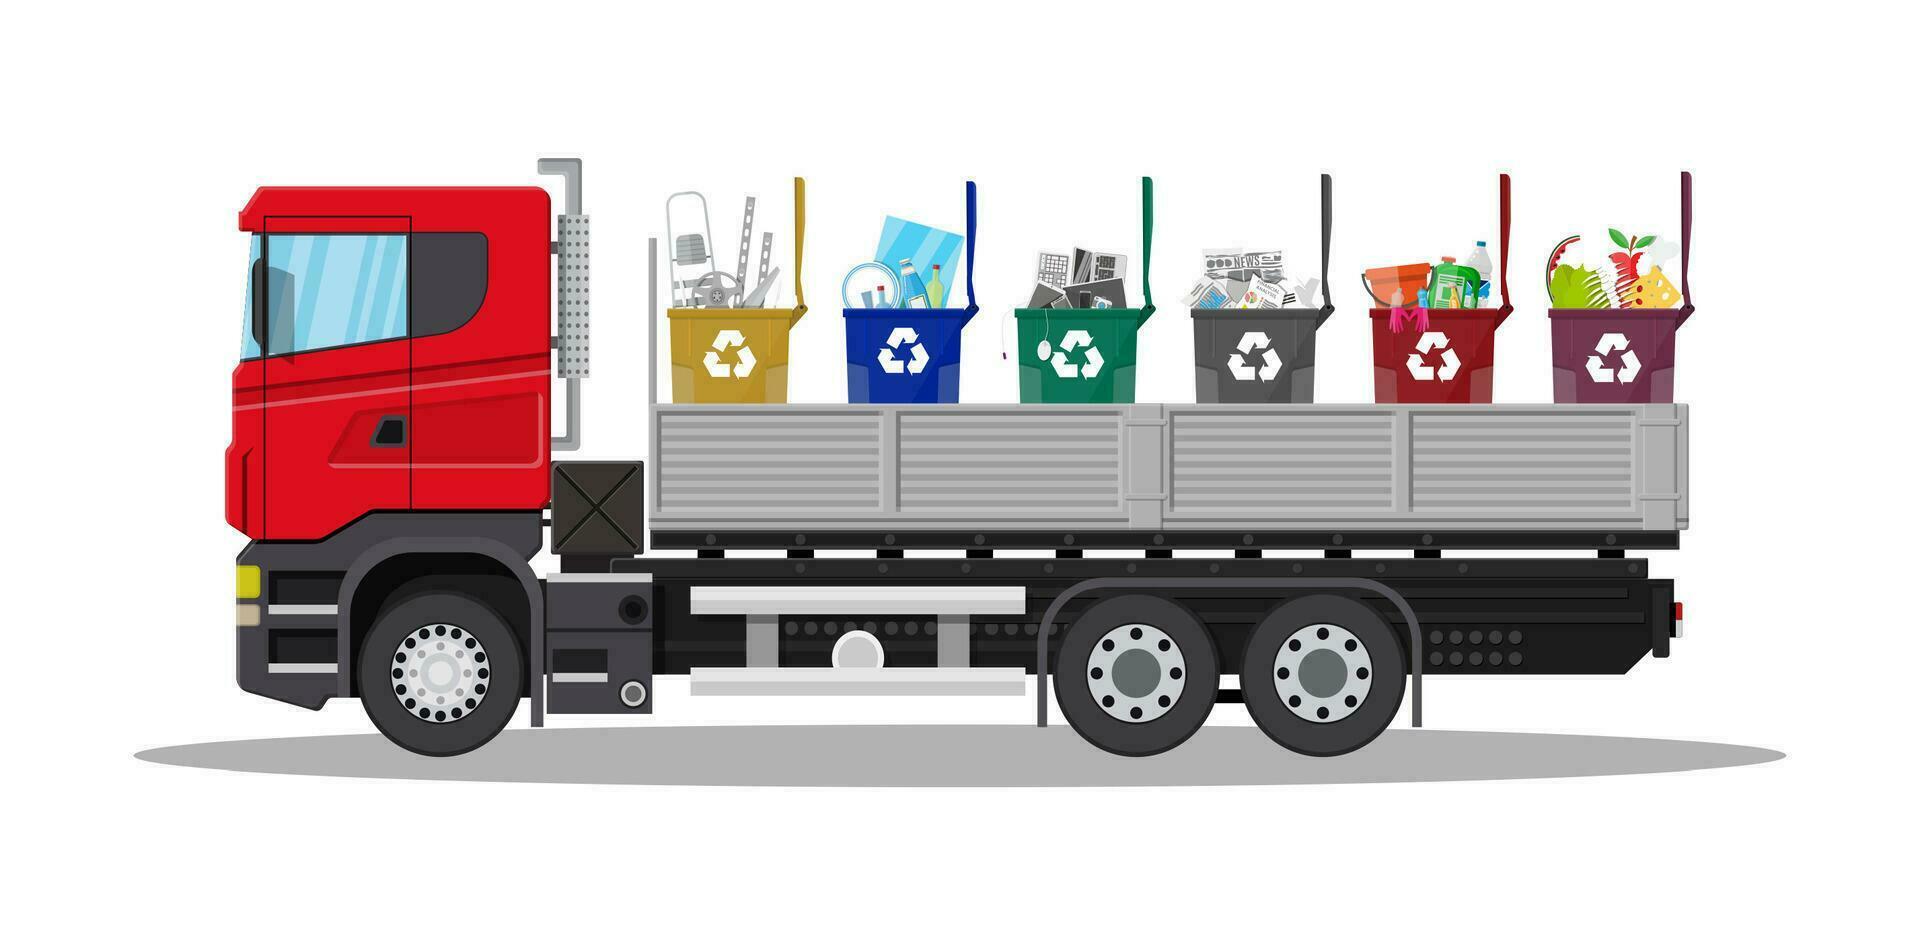 un camion transport ordures. voiture déchets disposition. pouvez récipient pour divers ordures. déchets ségrégation tri. recyclage et utilisation équipement. déchets gestion. vecteur illustration plat style